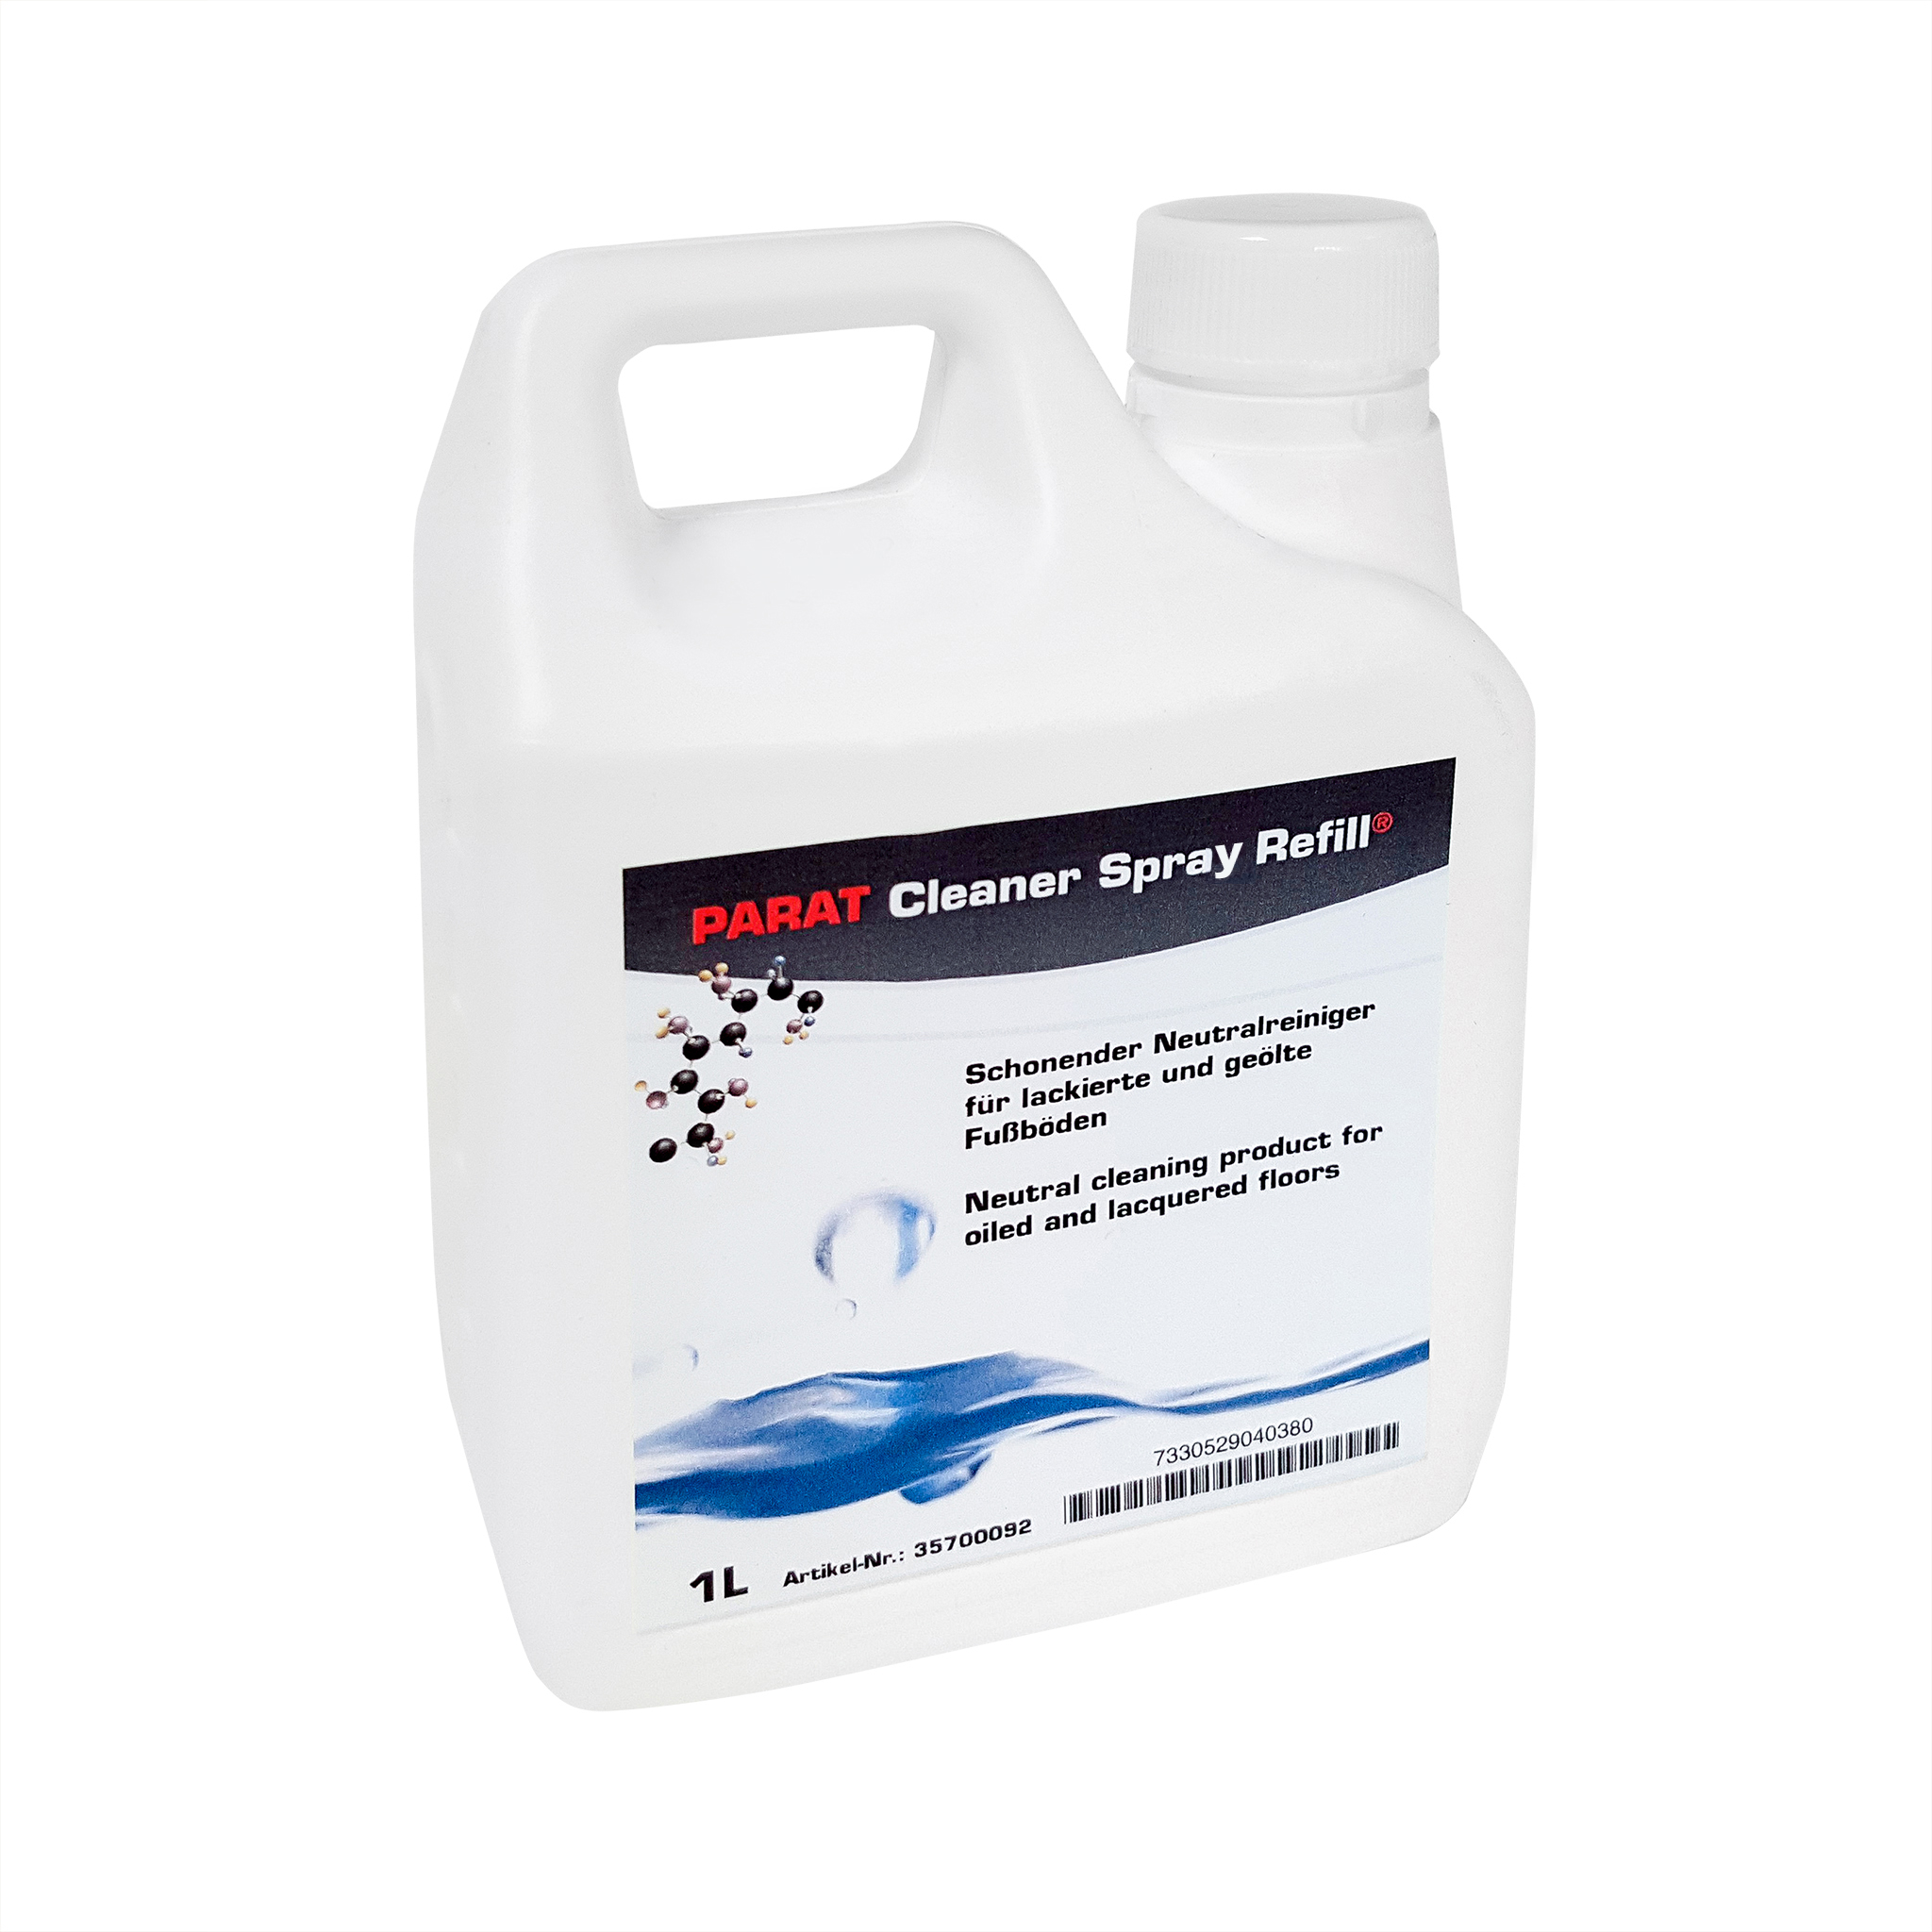 PARAT Cleaner Spray Refill 1L